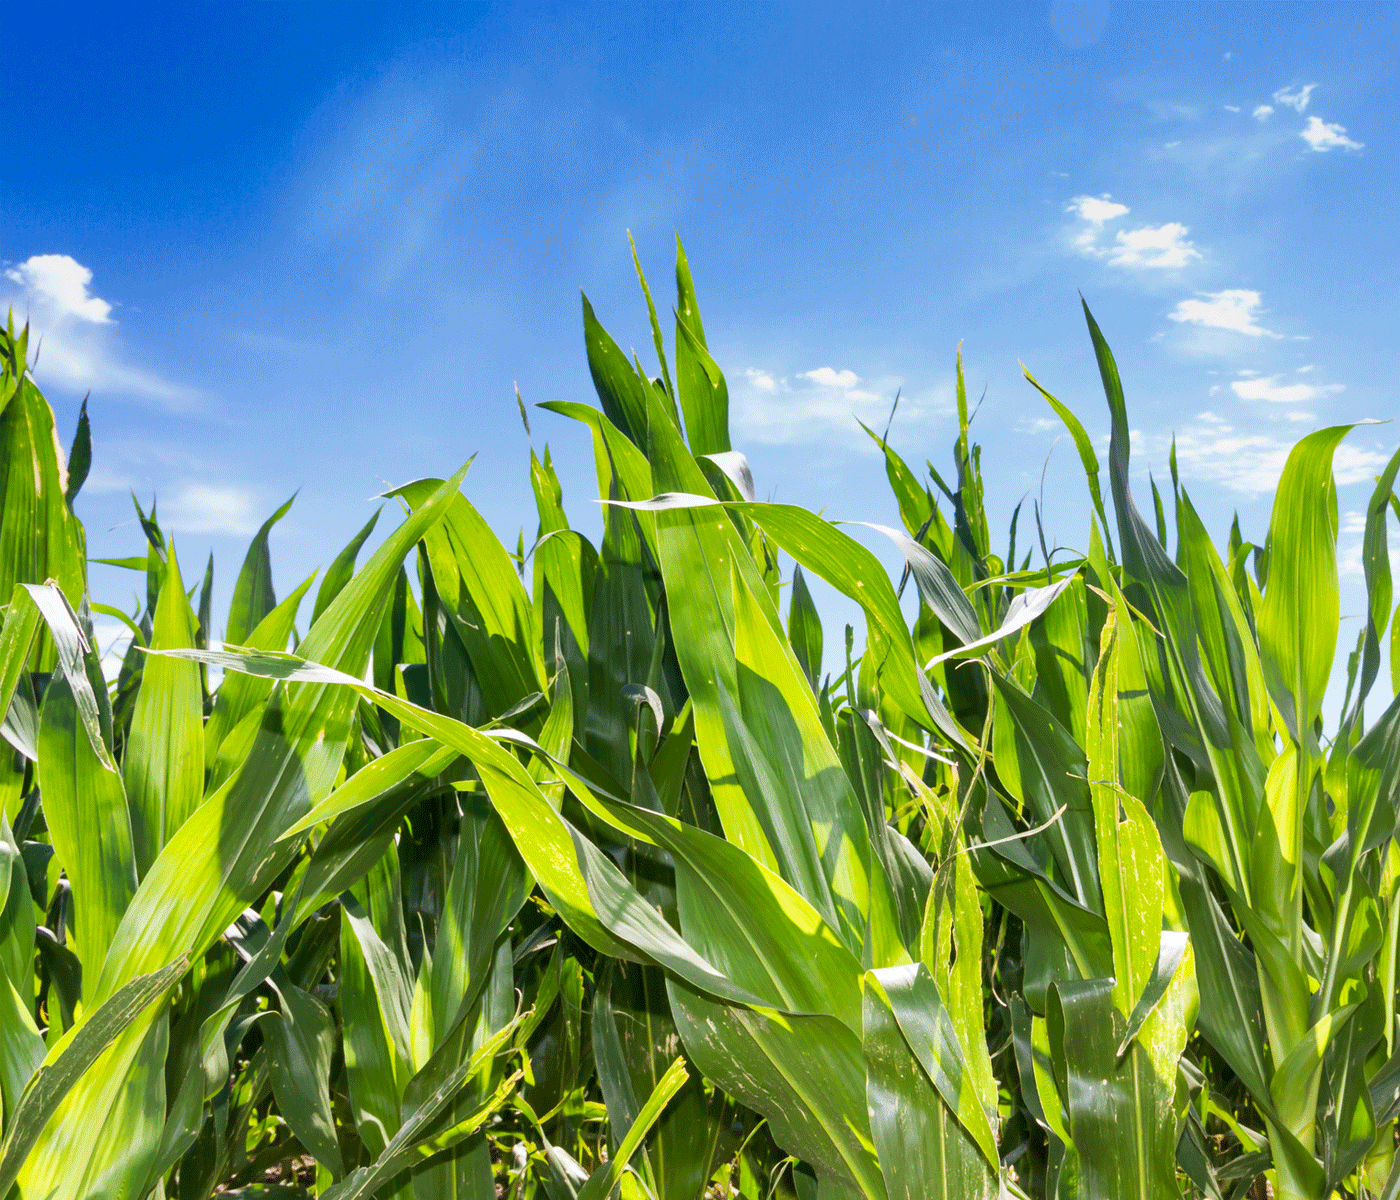 La presión de la cosecha del maíz mantiene los precios de los cereales en mínimos mientras la soja sufre una importante subida